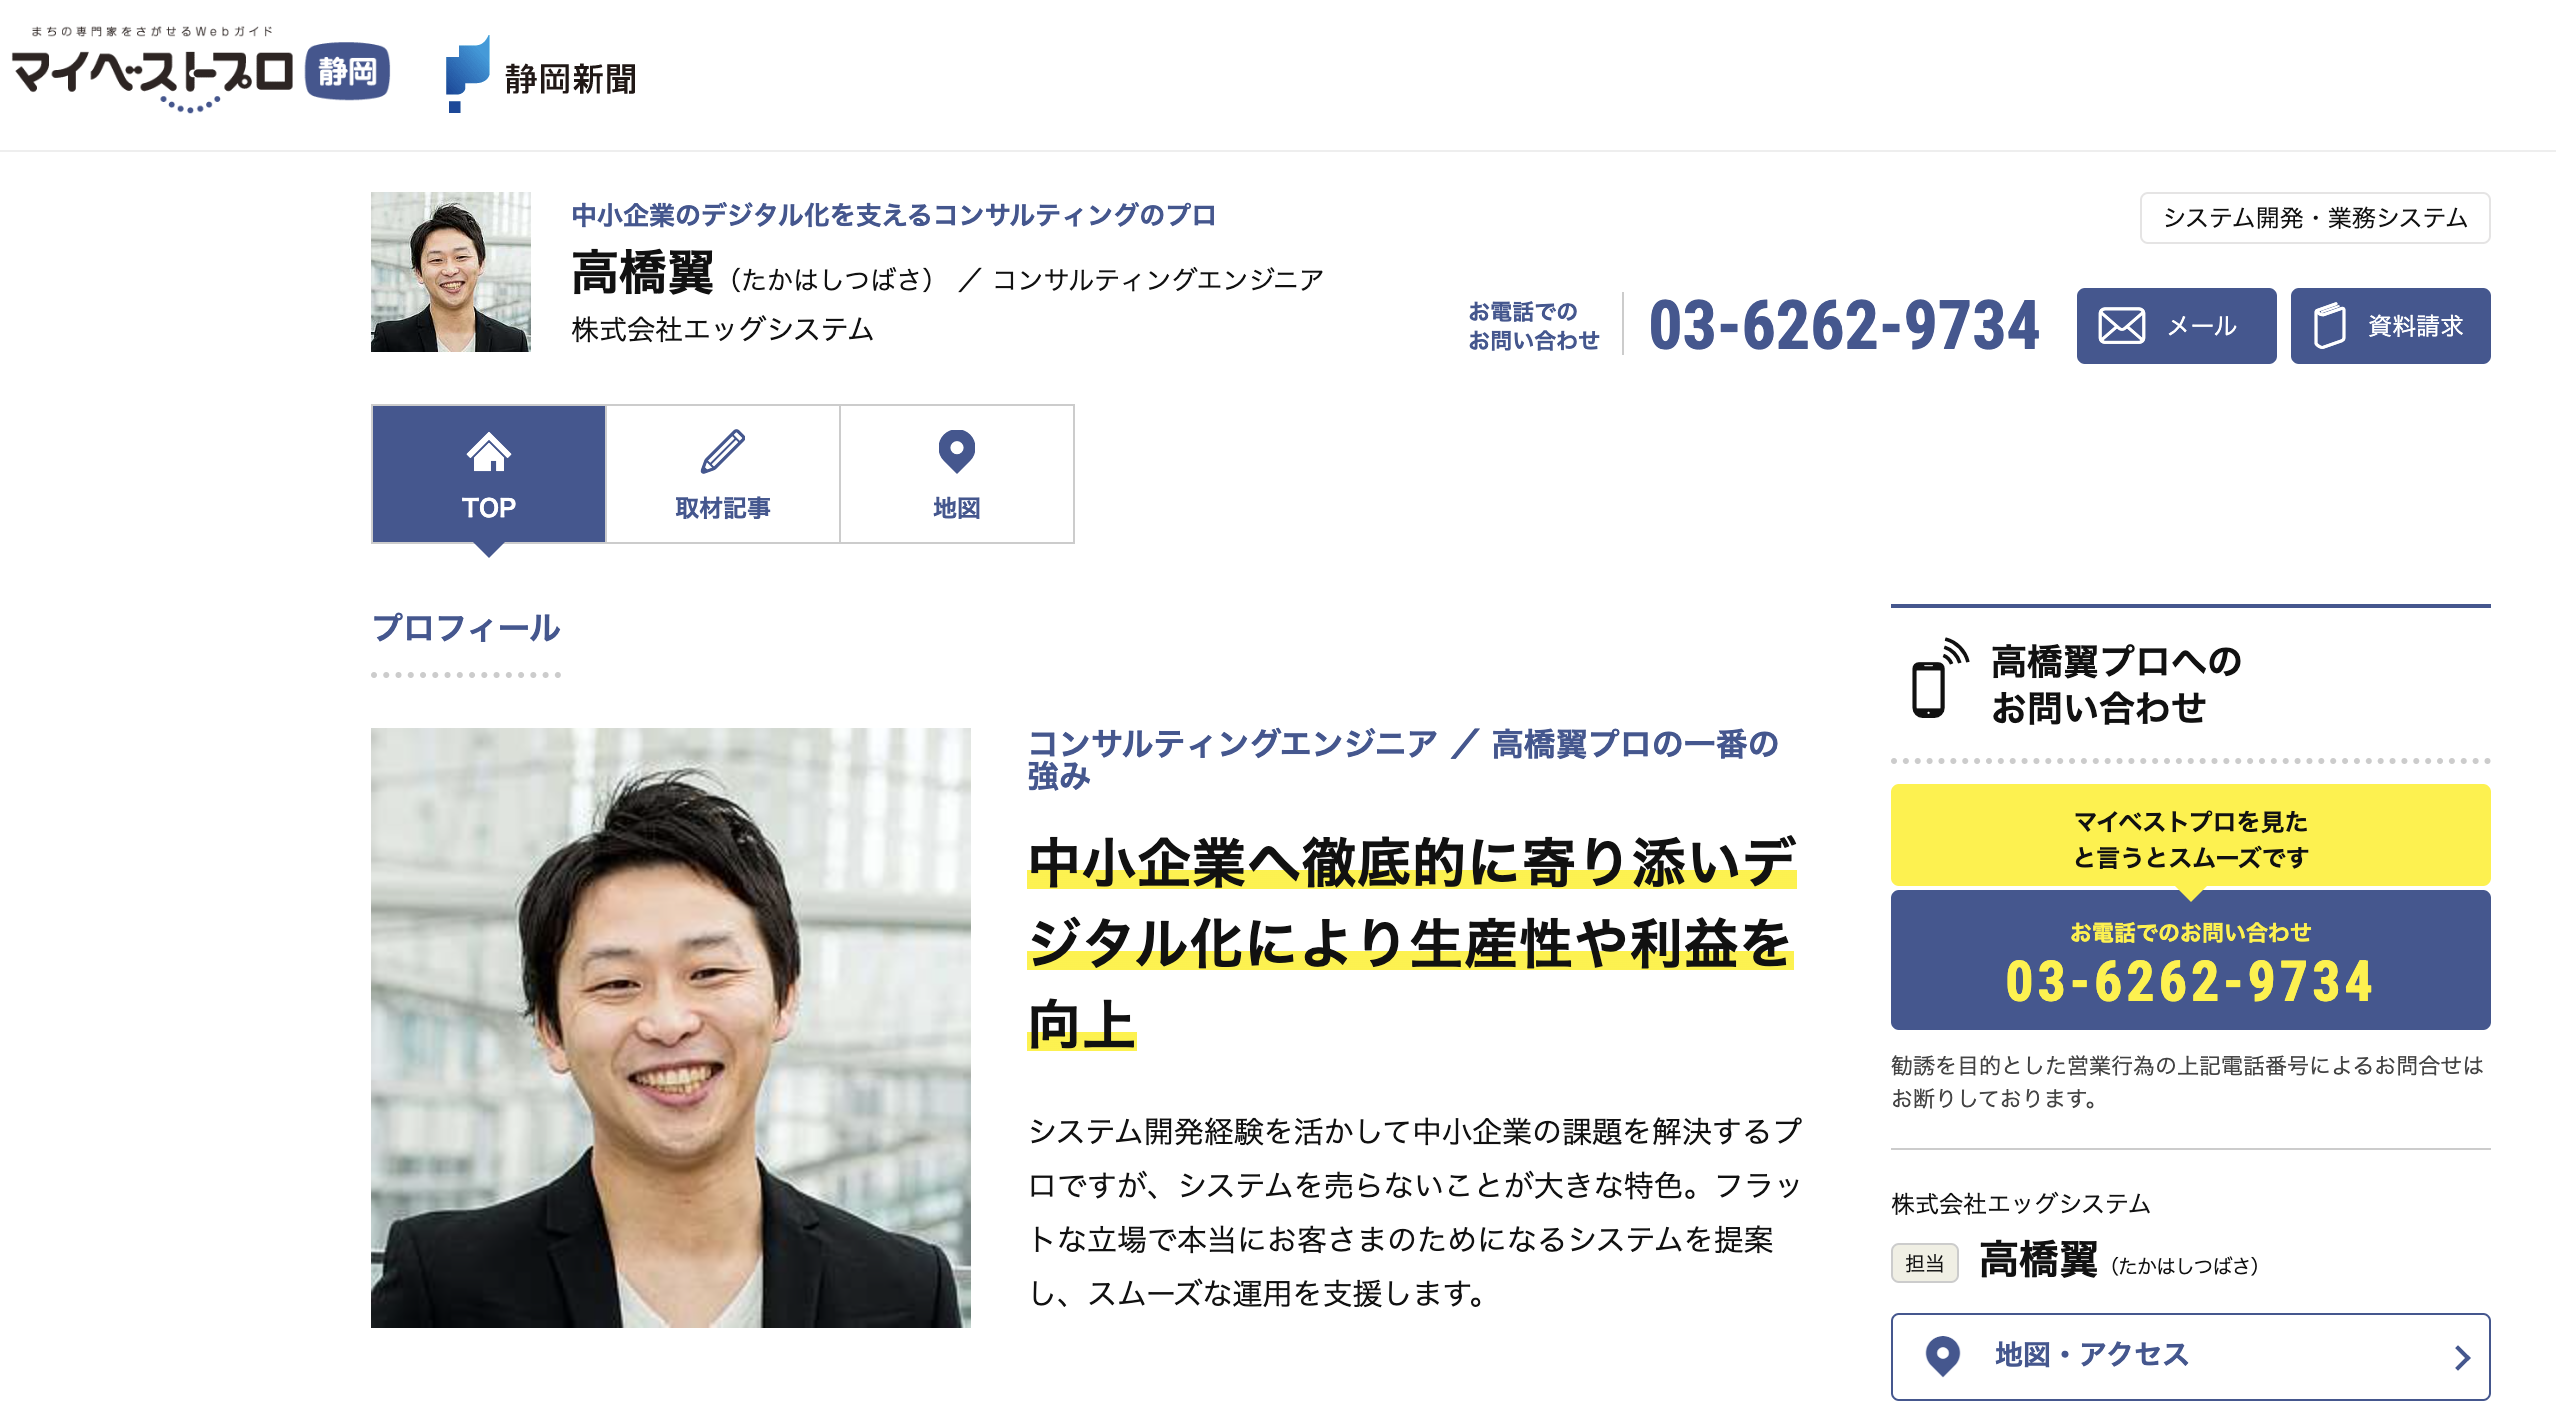 静岡新聞社が運営する「マイベストプロ静岡」へ掲載しました